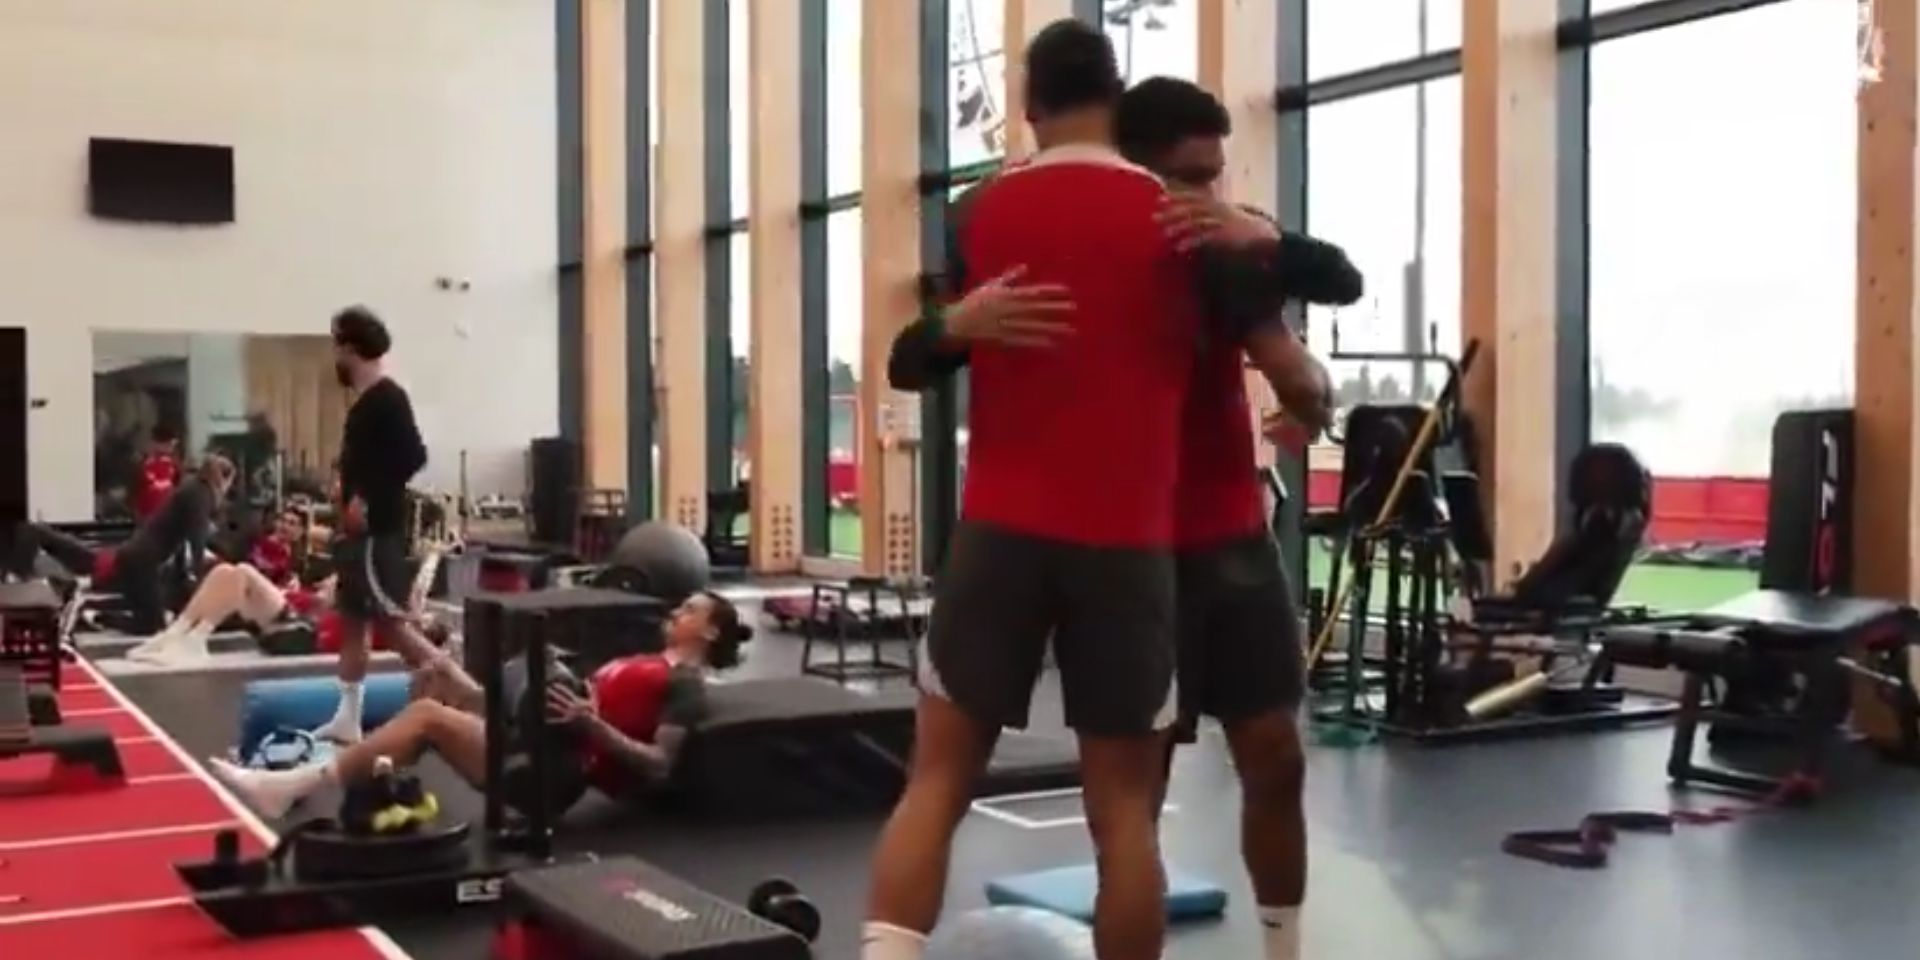 (Video) Liverpool fans will love Van Dijk’s heartfelt message to teammate in gym